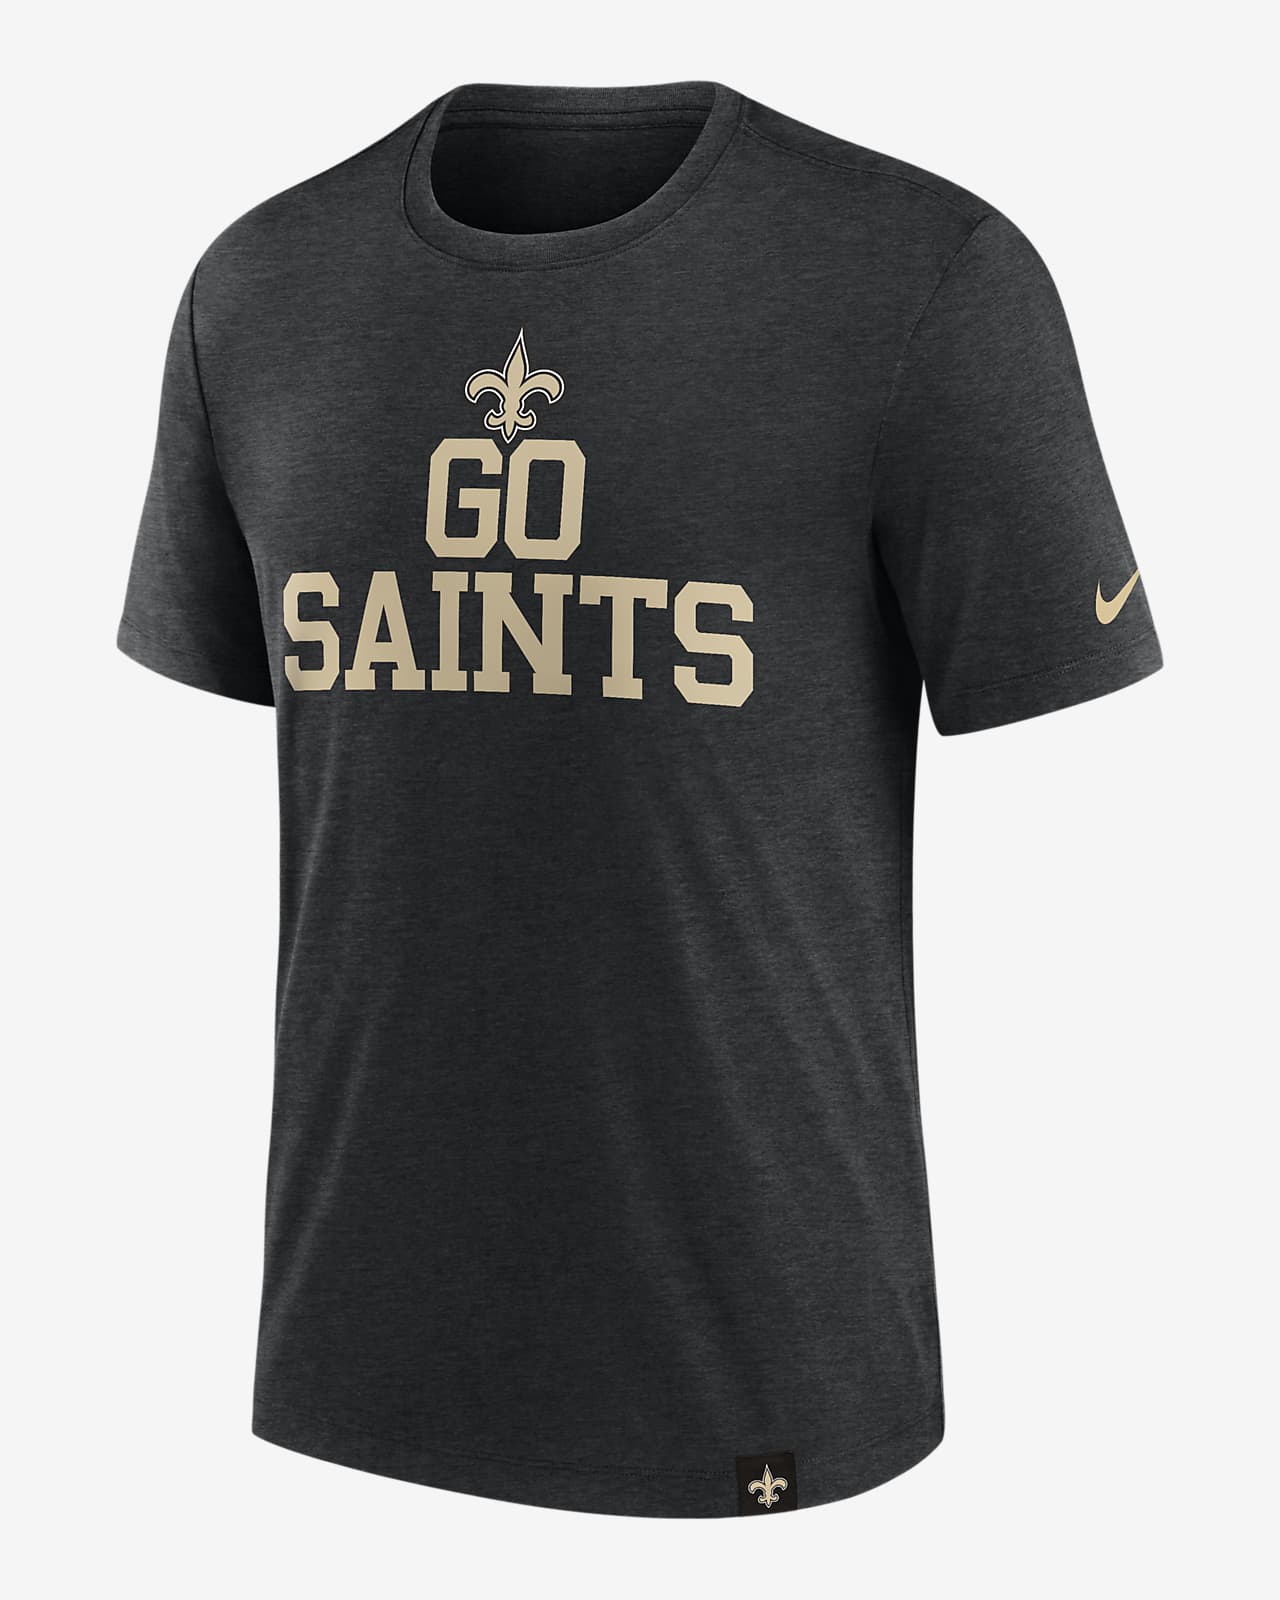 Playera Nike de la NFL para hombre New Orleans Saints Blitz